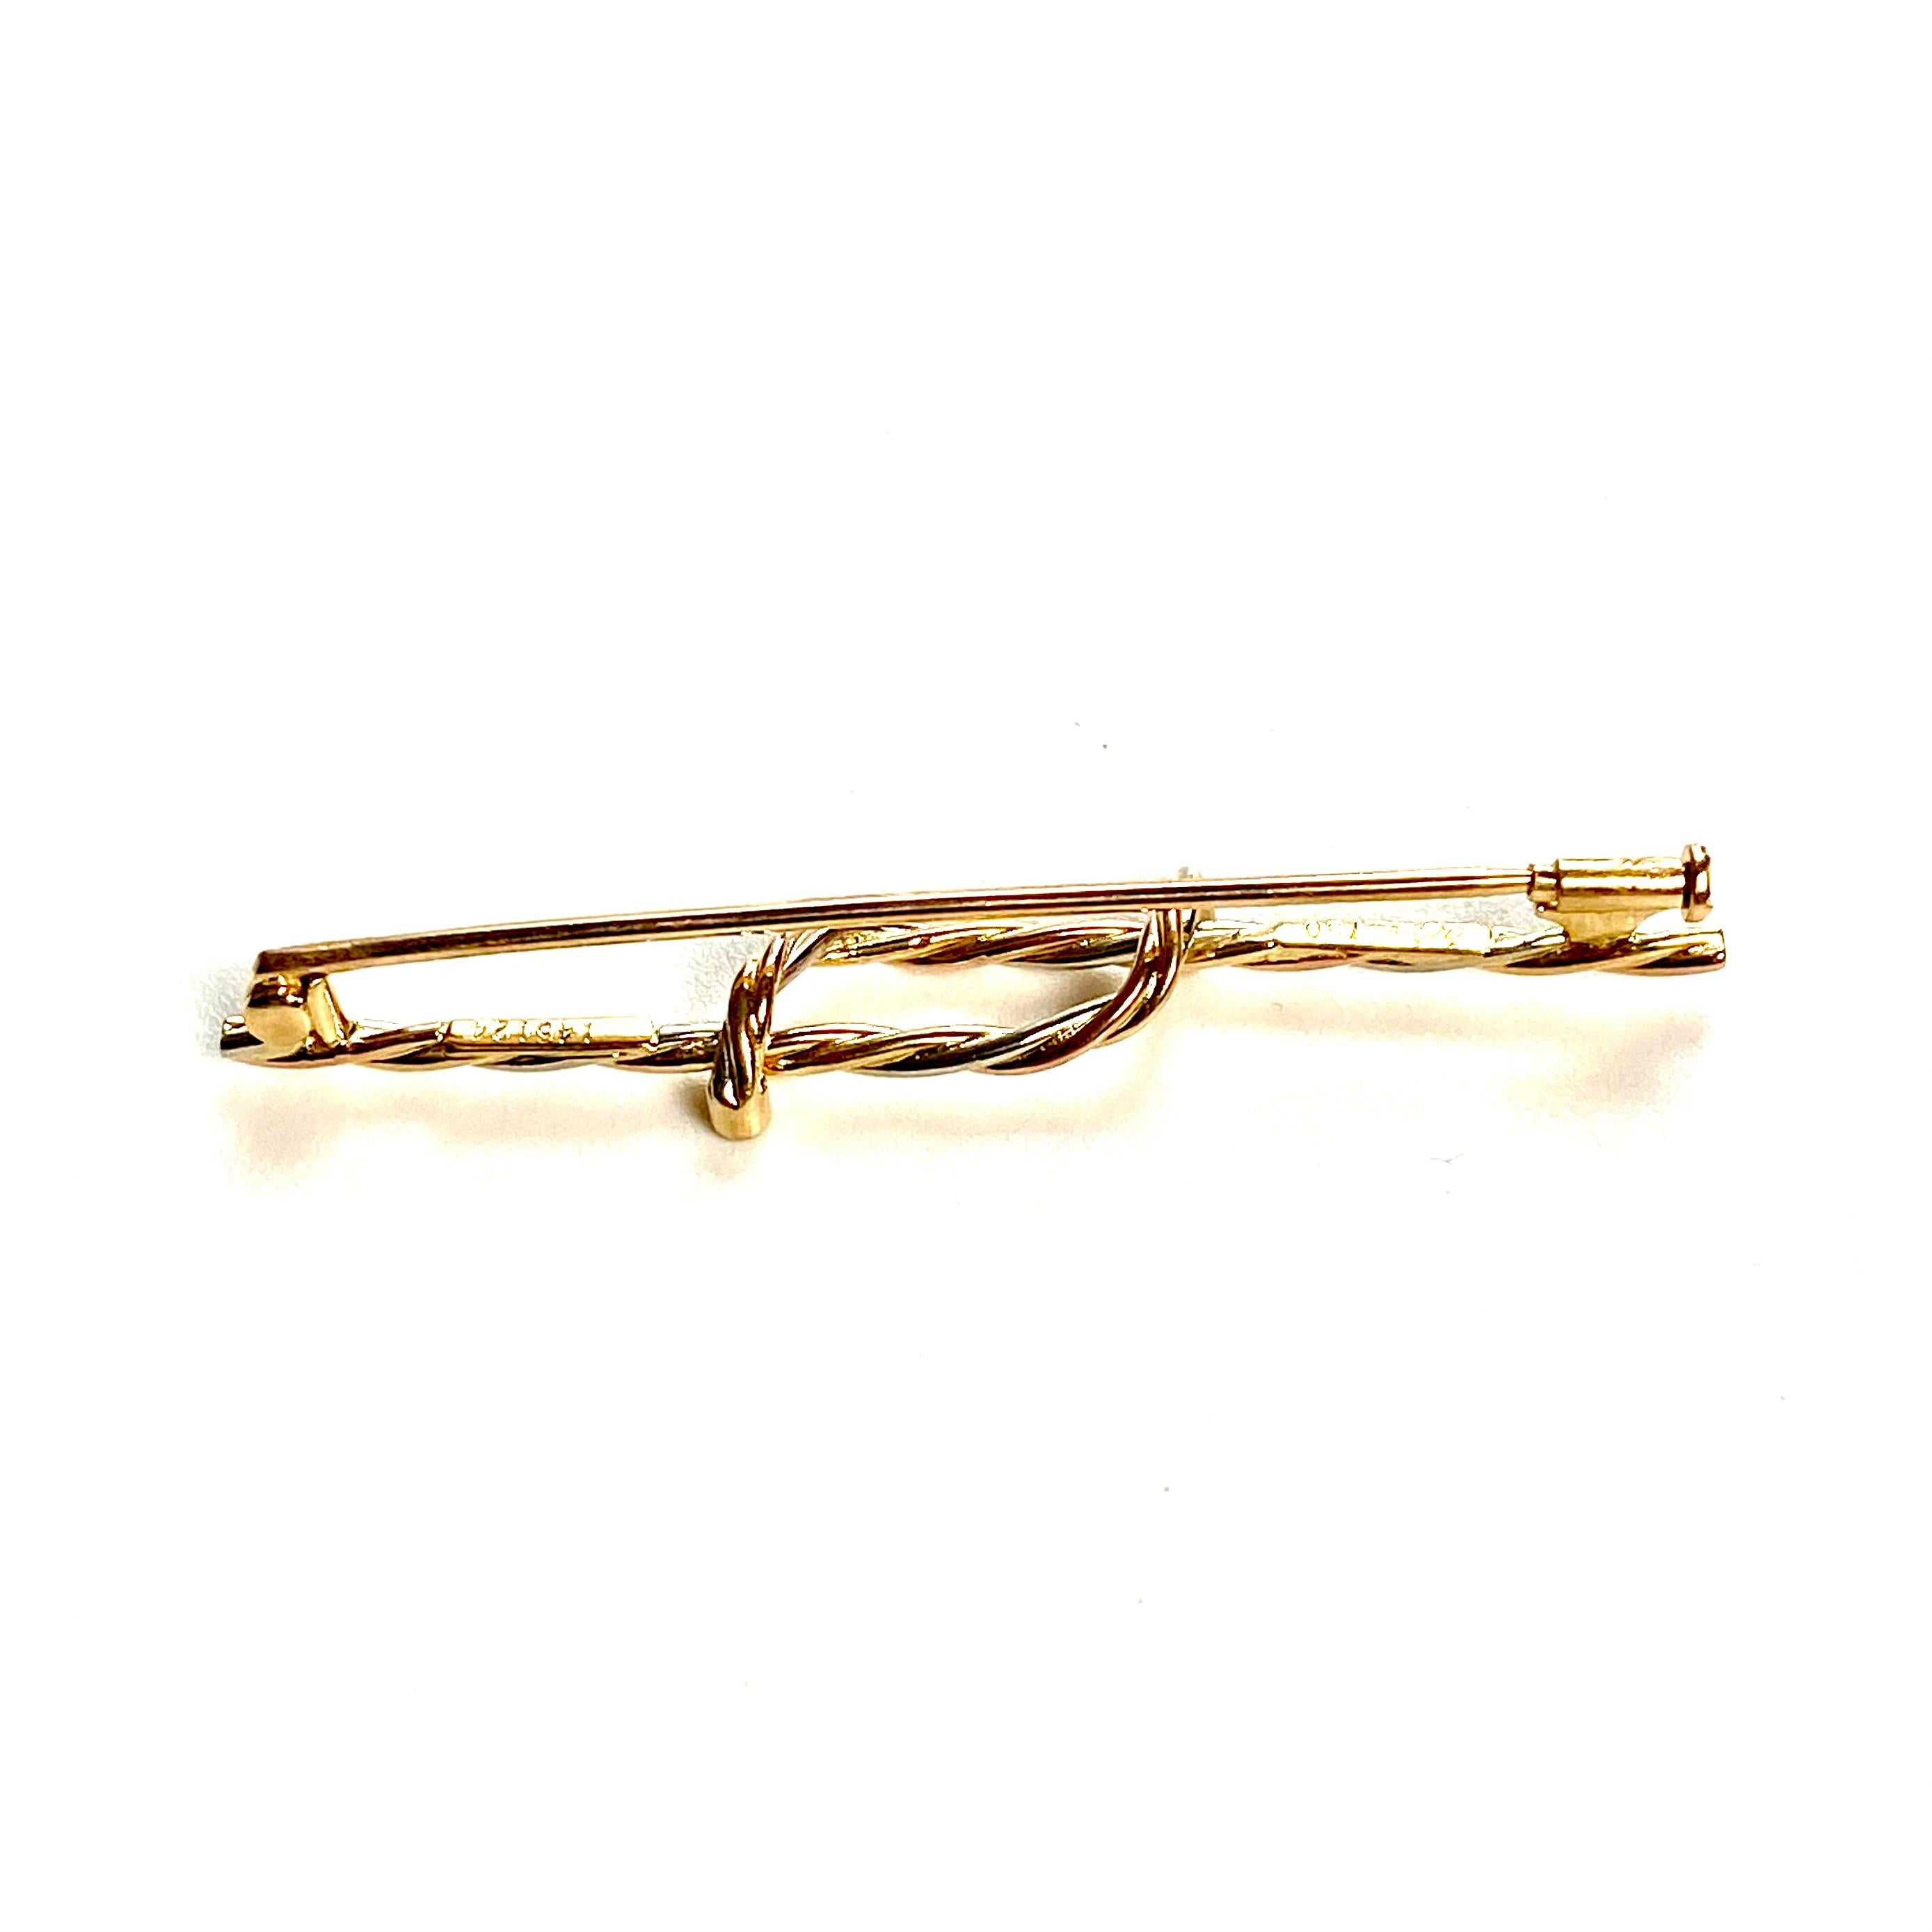 Die exquisite Vintage Cartier 18 Karat Gold Triton Rope Twist Design Diamond Brooch signiert Cartier, 750, #145124, misst 2,05 Zoll in der Länge - ein wahres Meisterwerk, das Eleganz, Handwerkskunst und zeitlosen Charme verkörpert. Diese opulente